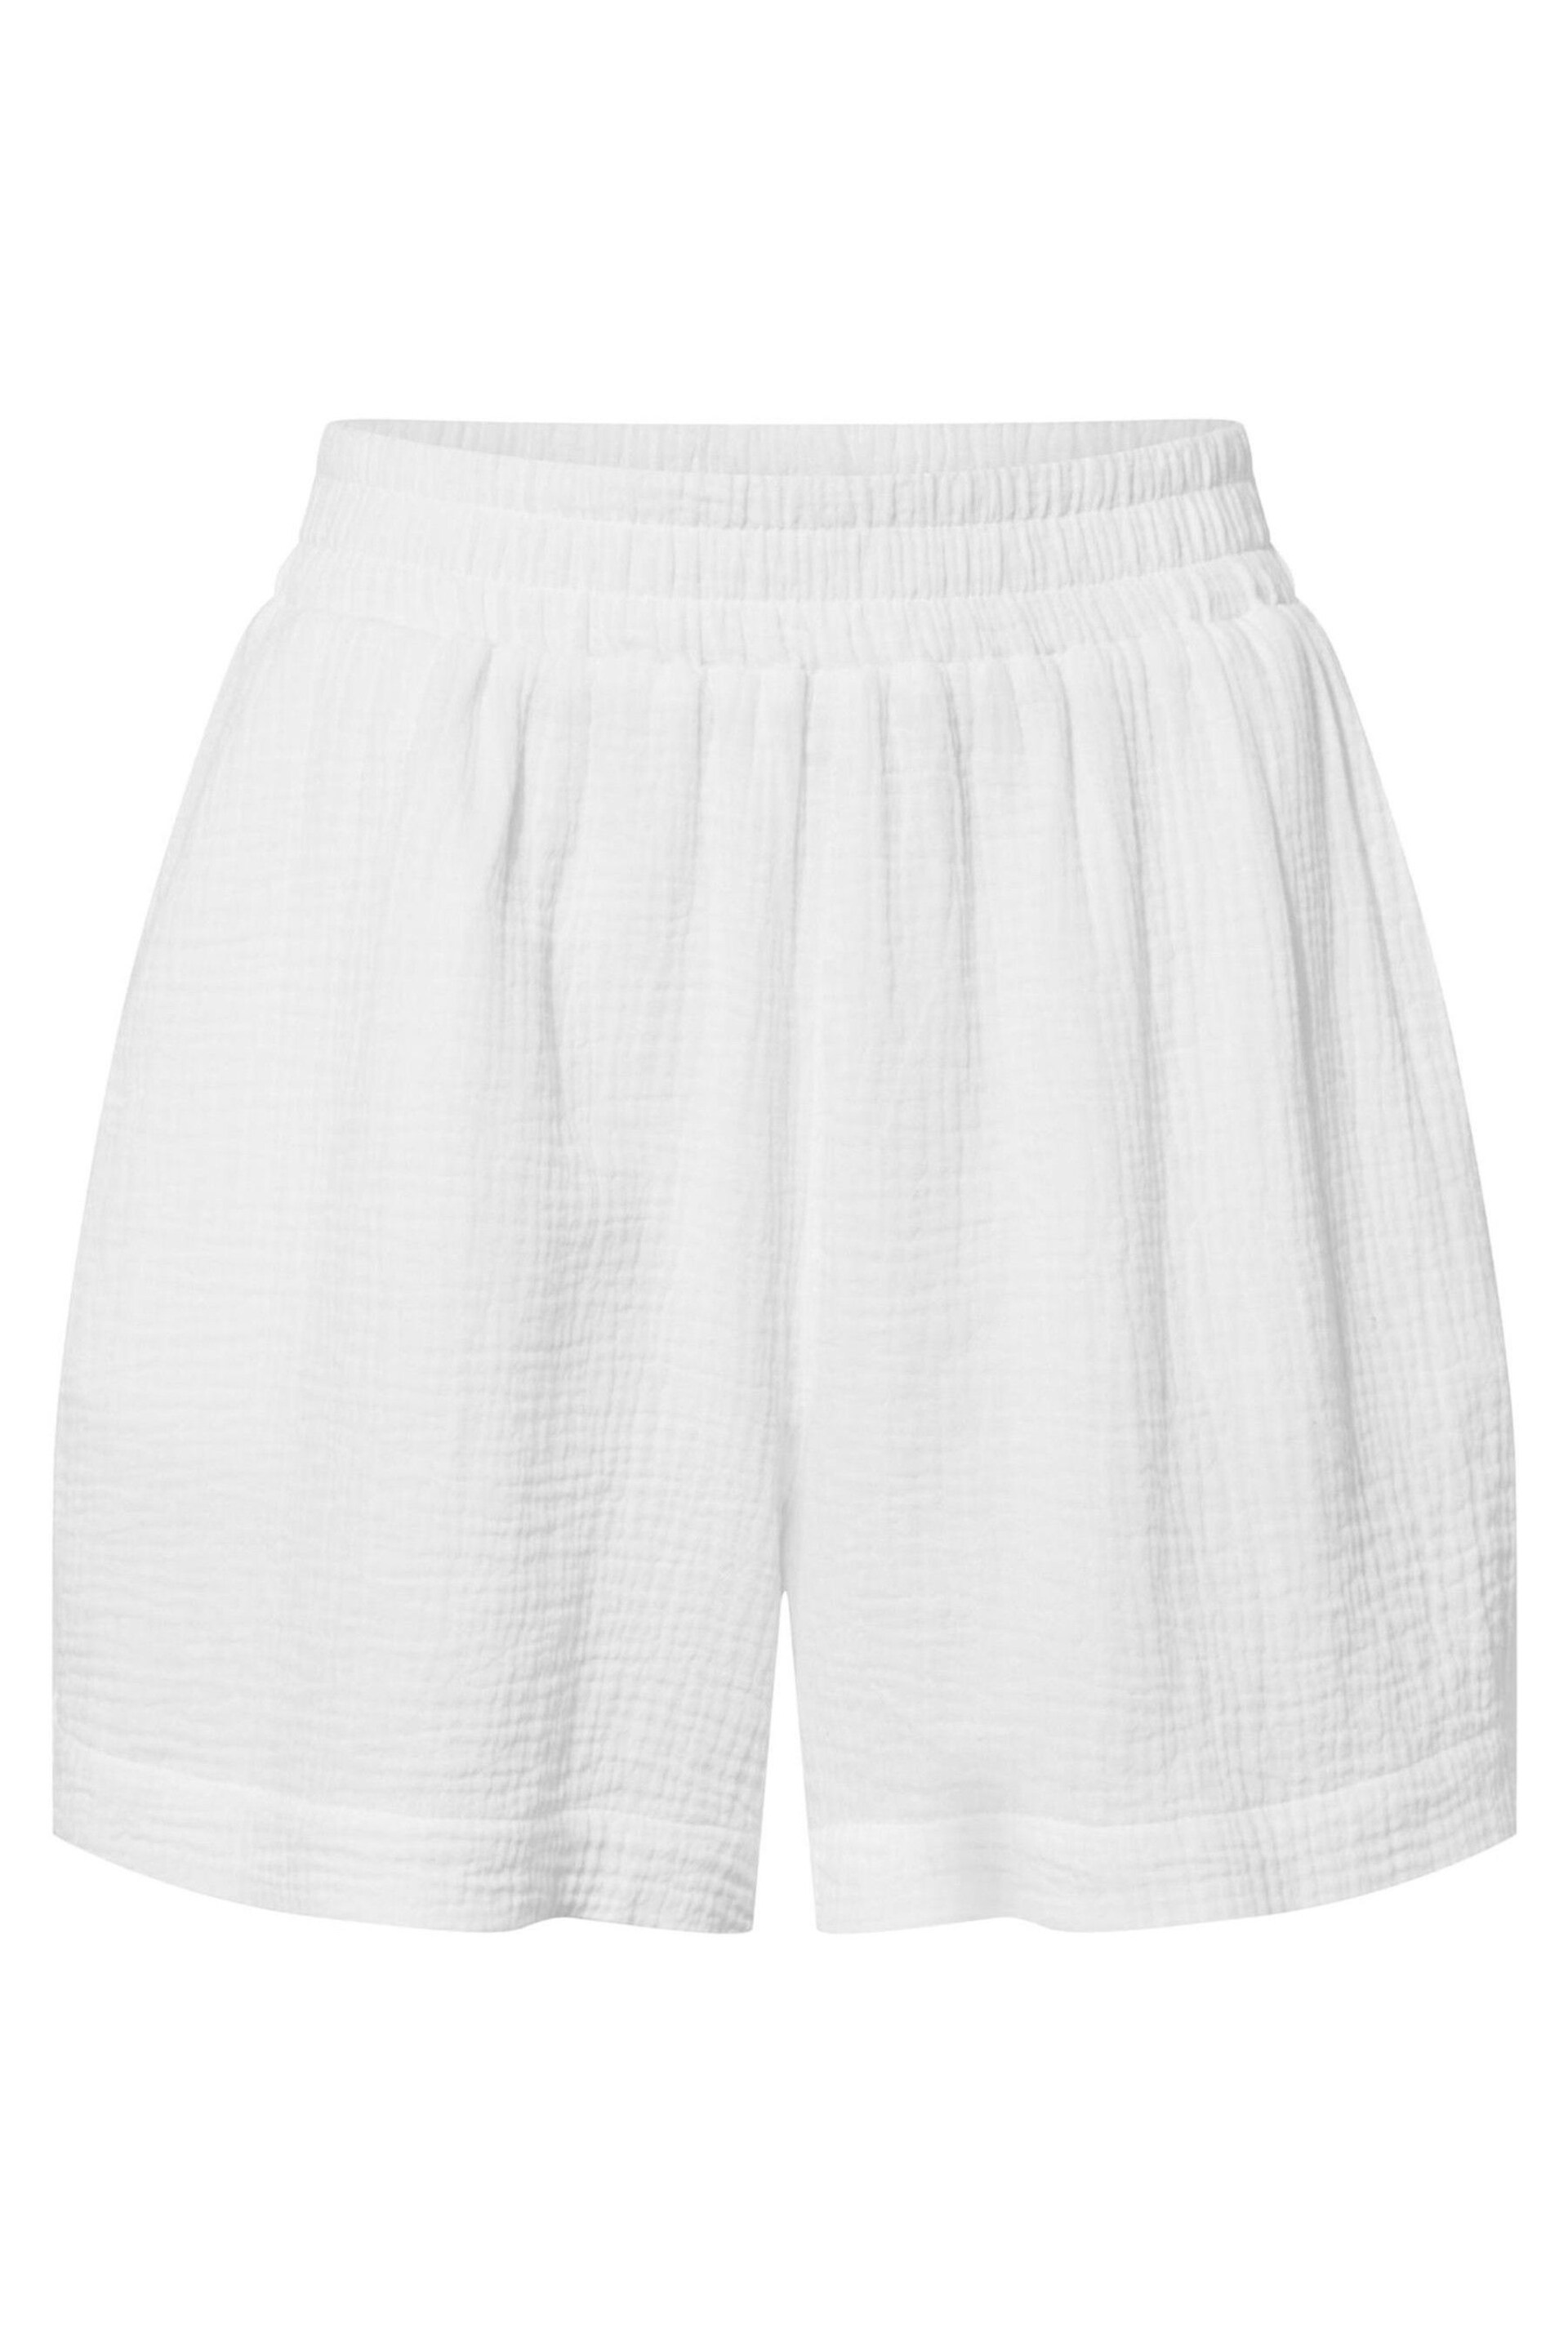 Tog 24 White Samie Shorts - Image 5 of 5